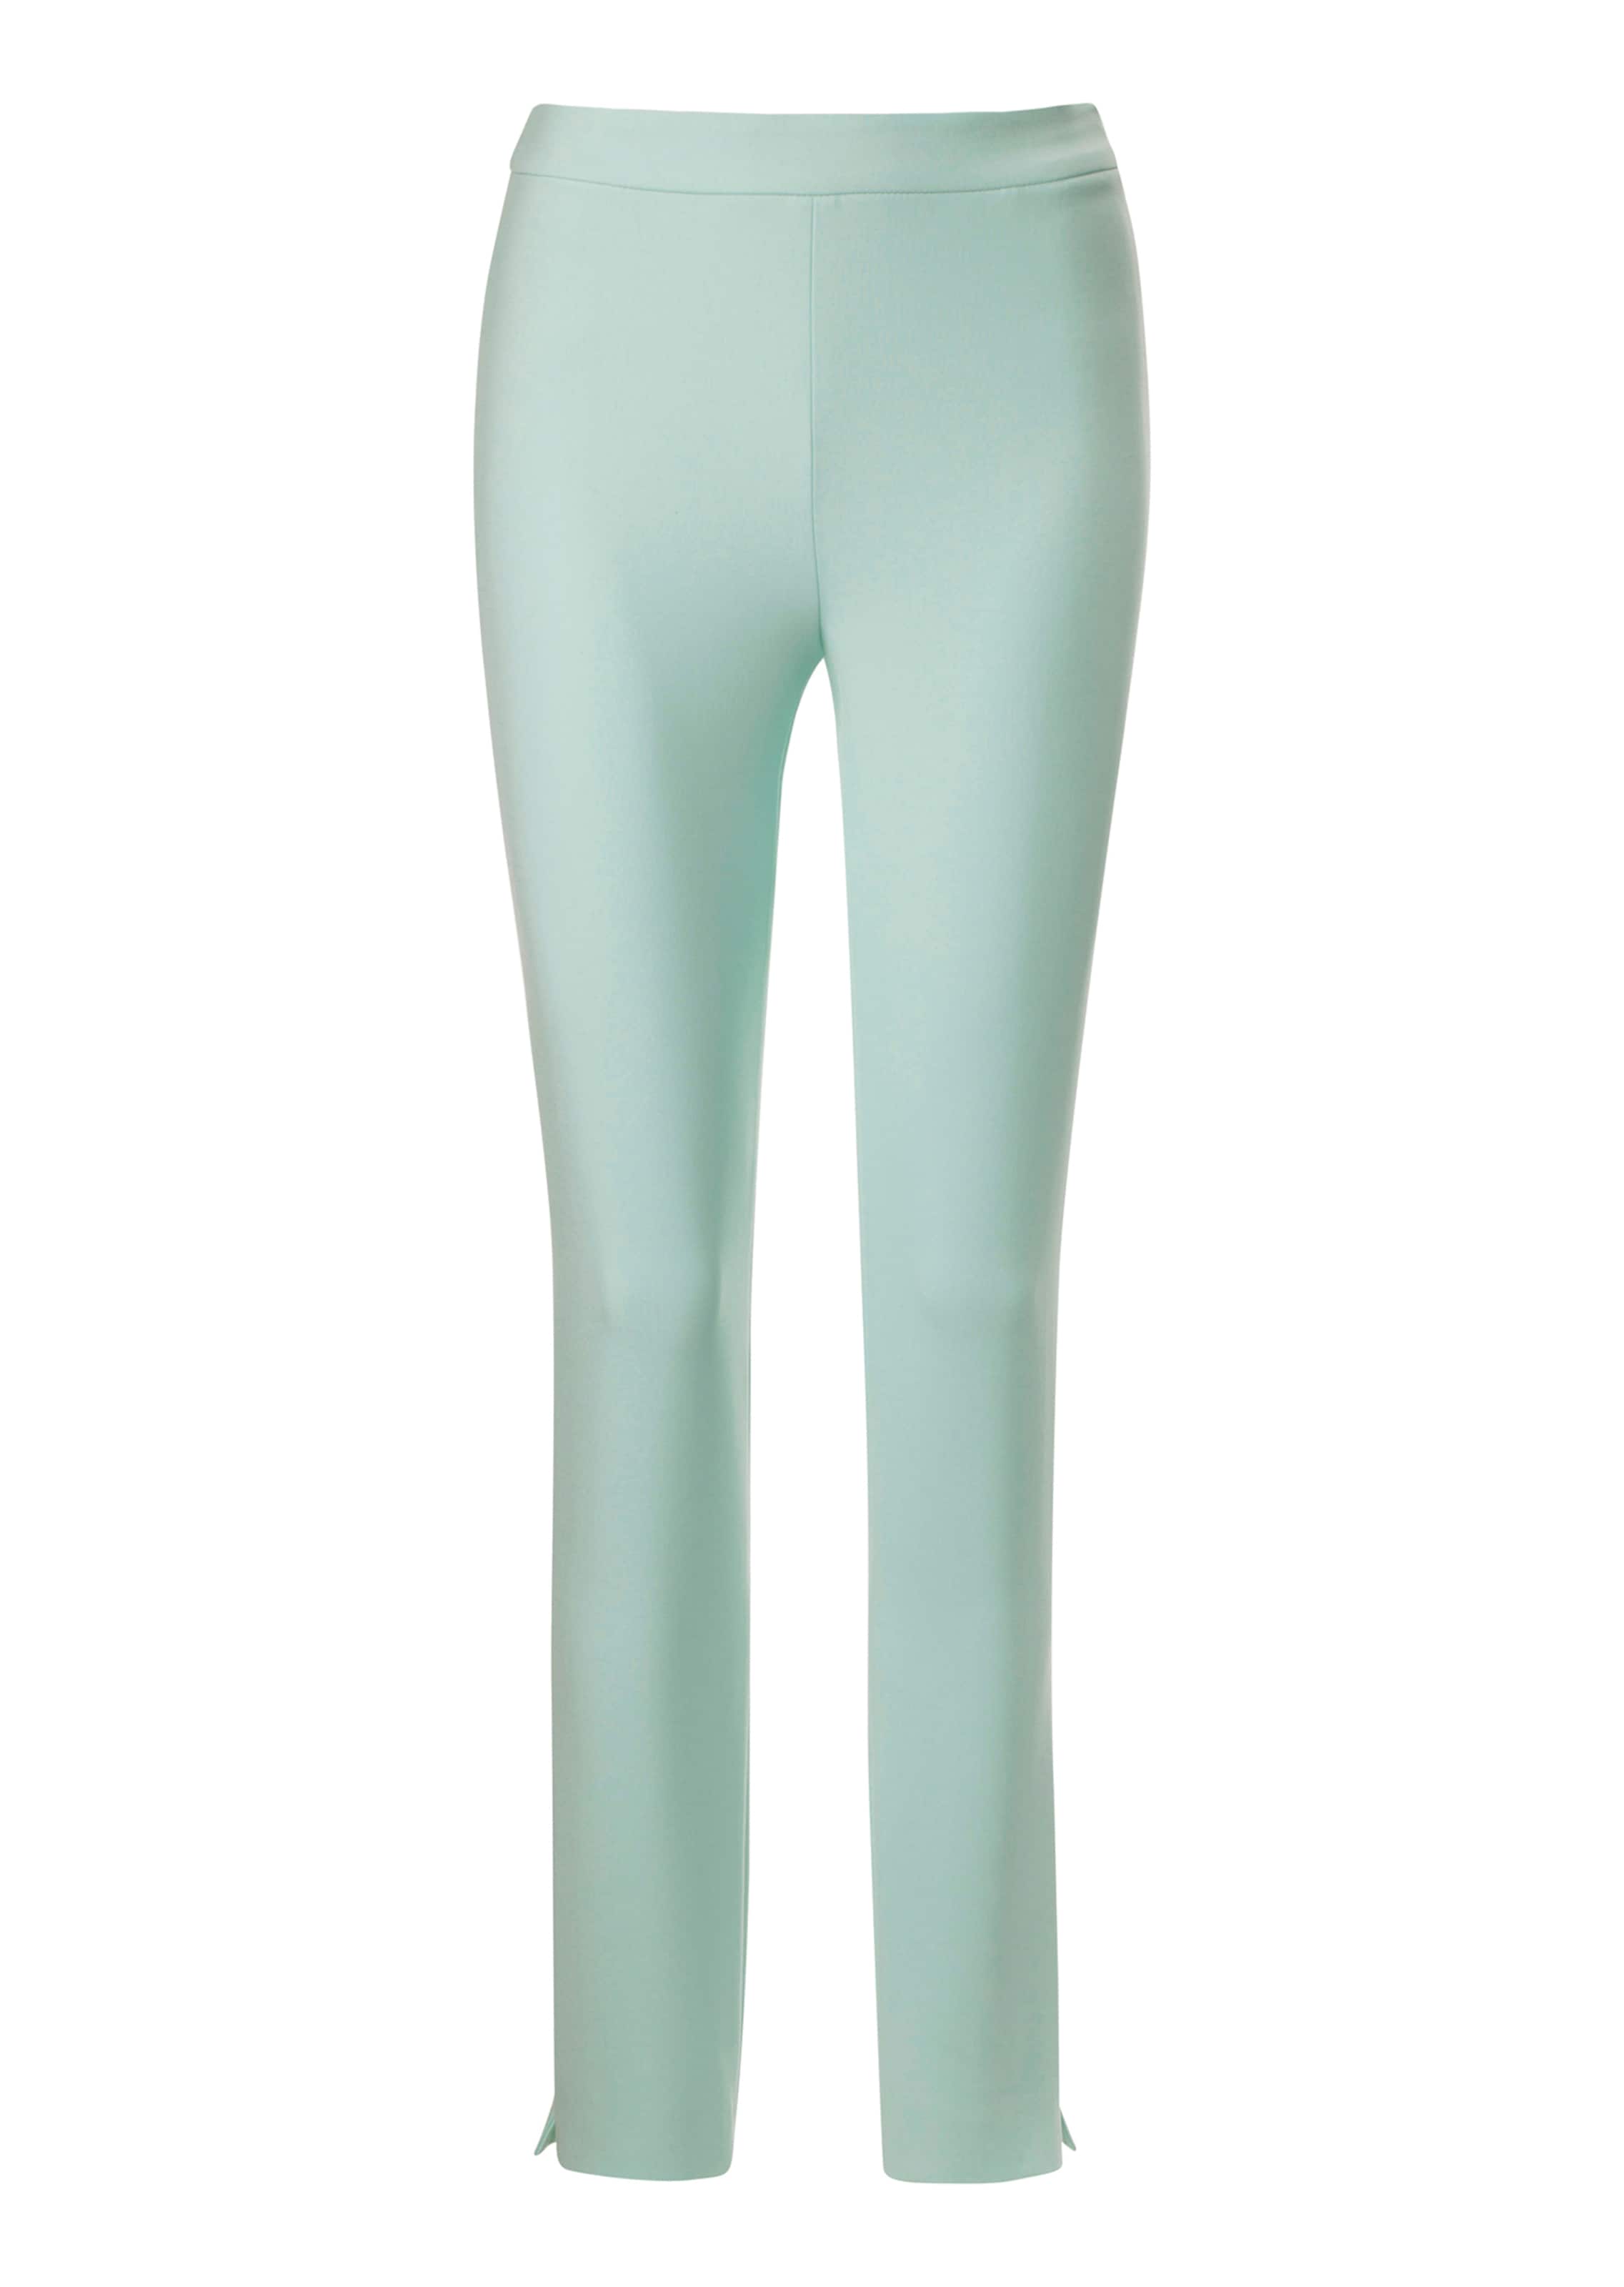 Mint Green Trousers for Women | Lyst UK